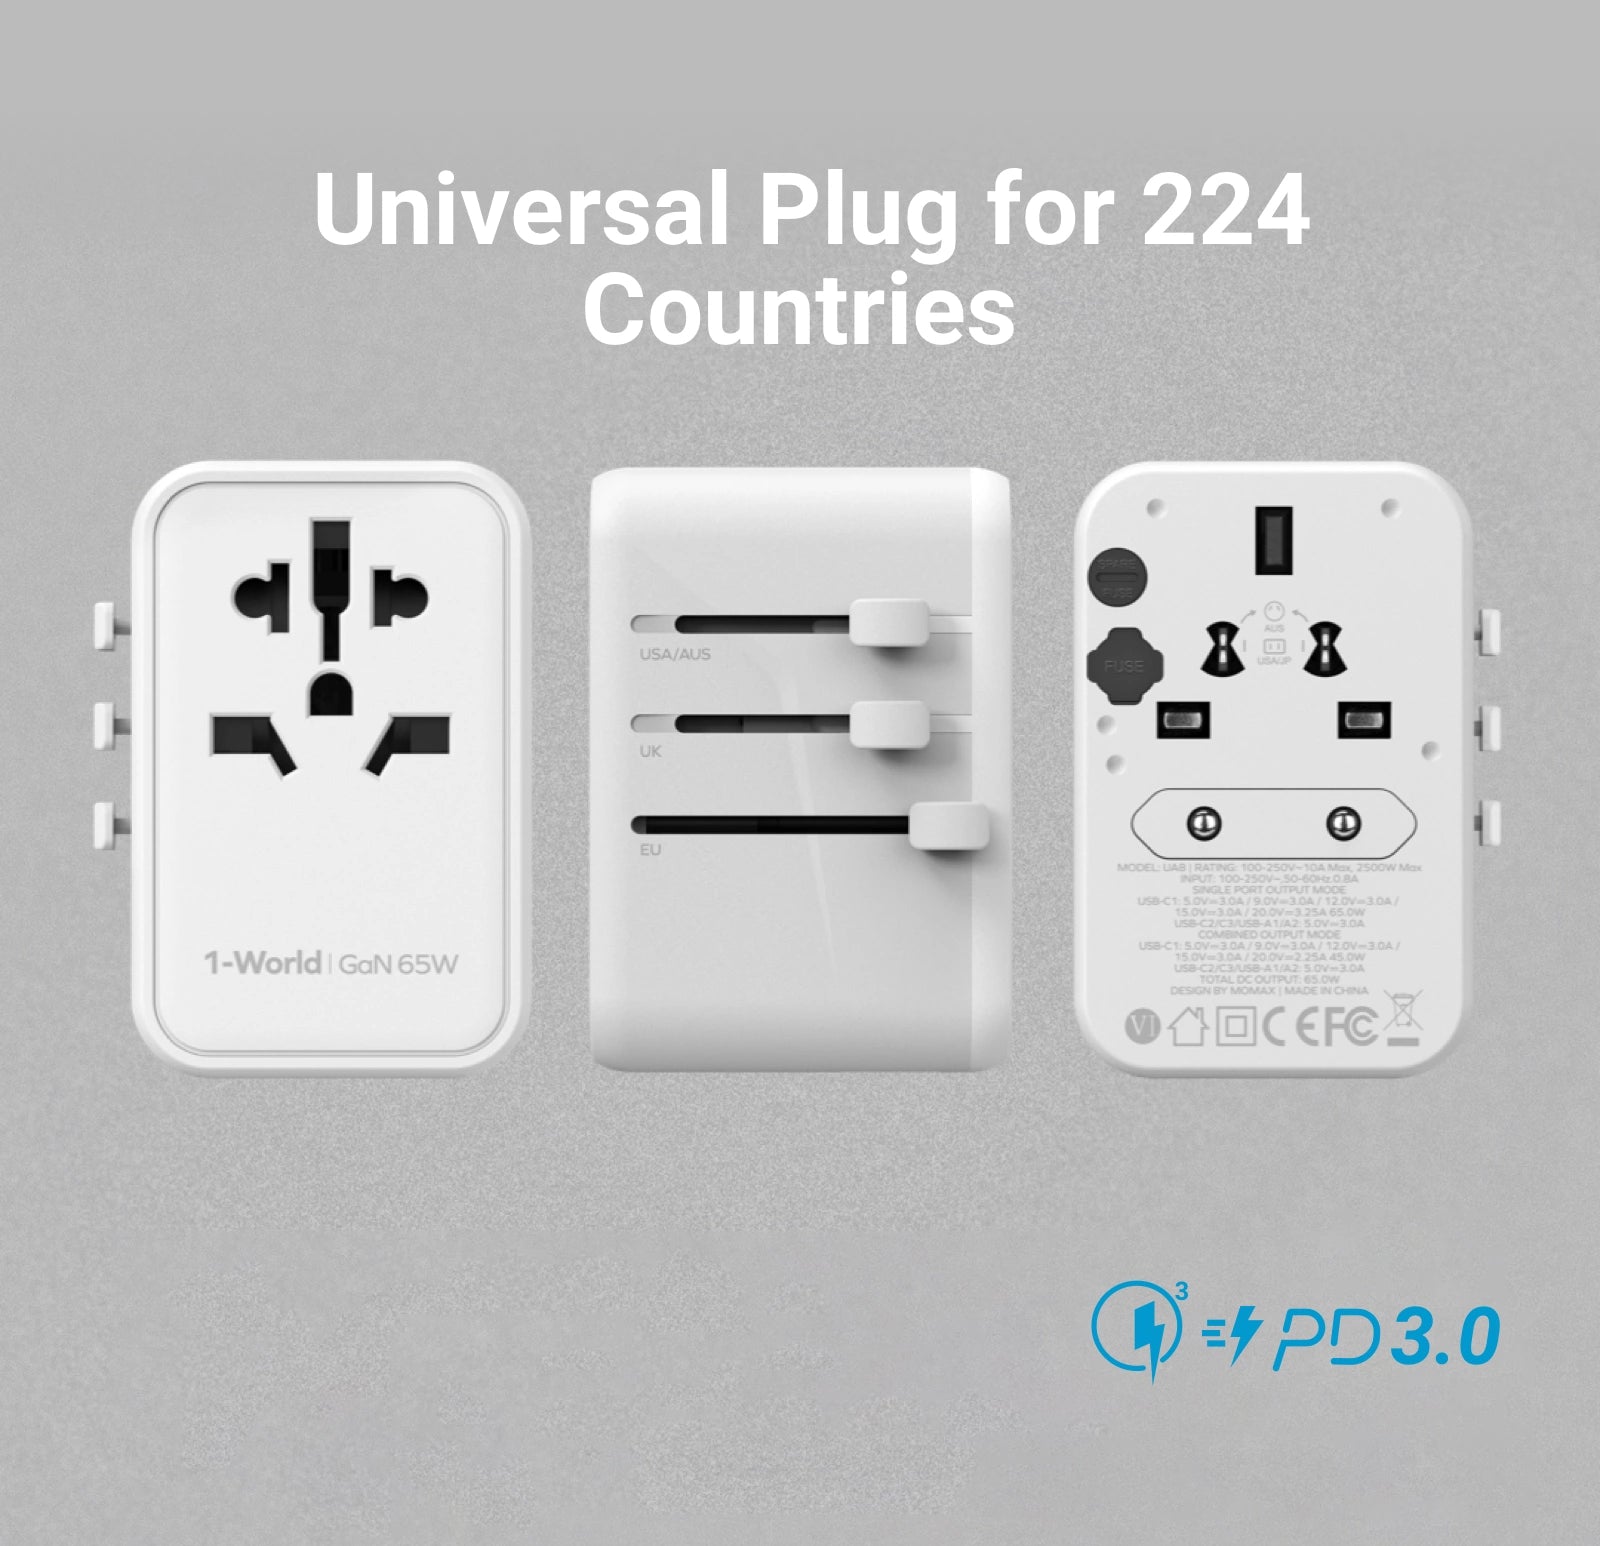 Universal Plug for 224 Countries